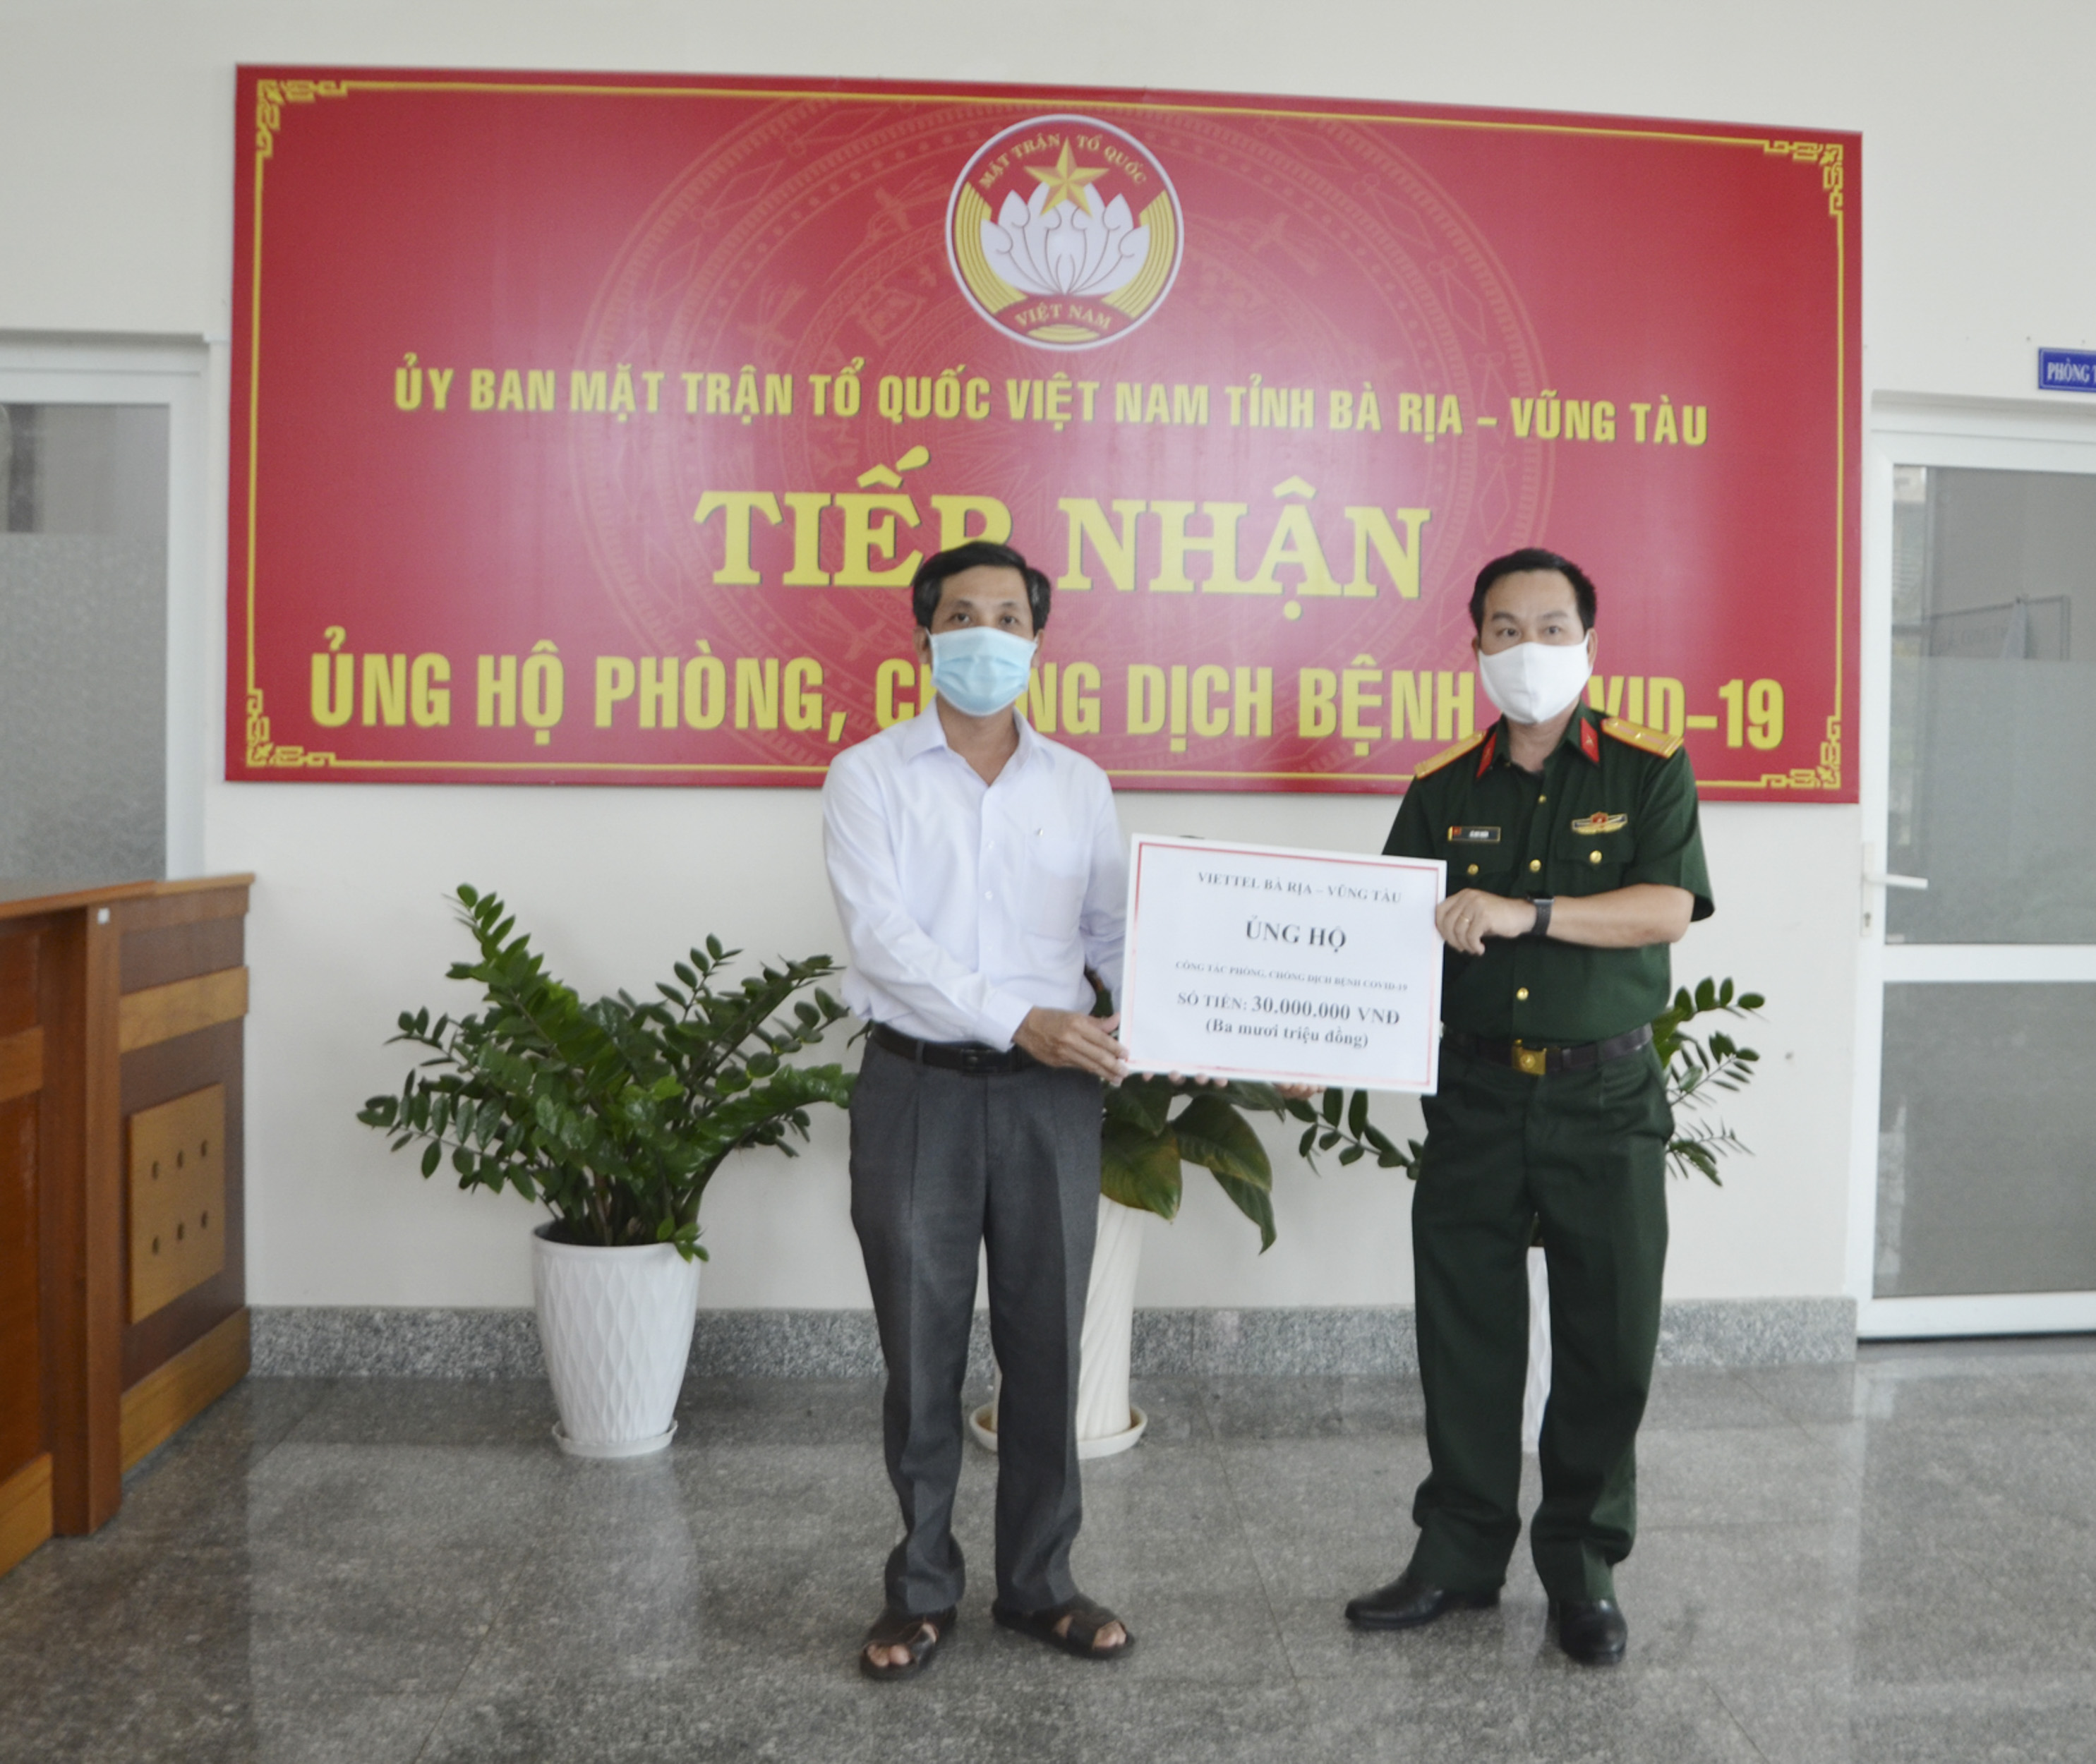 Thiếu tá Lê Huy Huân, Phó Giám đốc Viettel BR-VT (bìa phải) trao bảng tượng trưng số tiền 30 triệu đồng ủng hộ phòng chống dịch bệnh COVID-19 cho đại diện UBMTTQVN tỉnh chiều 13/4.